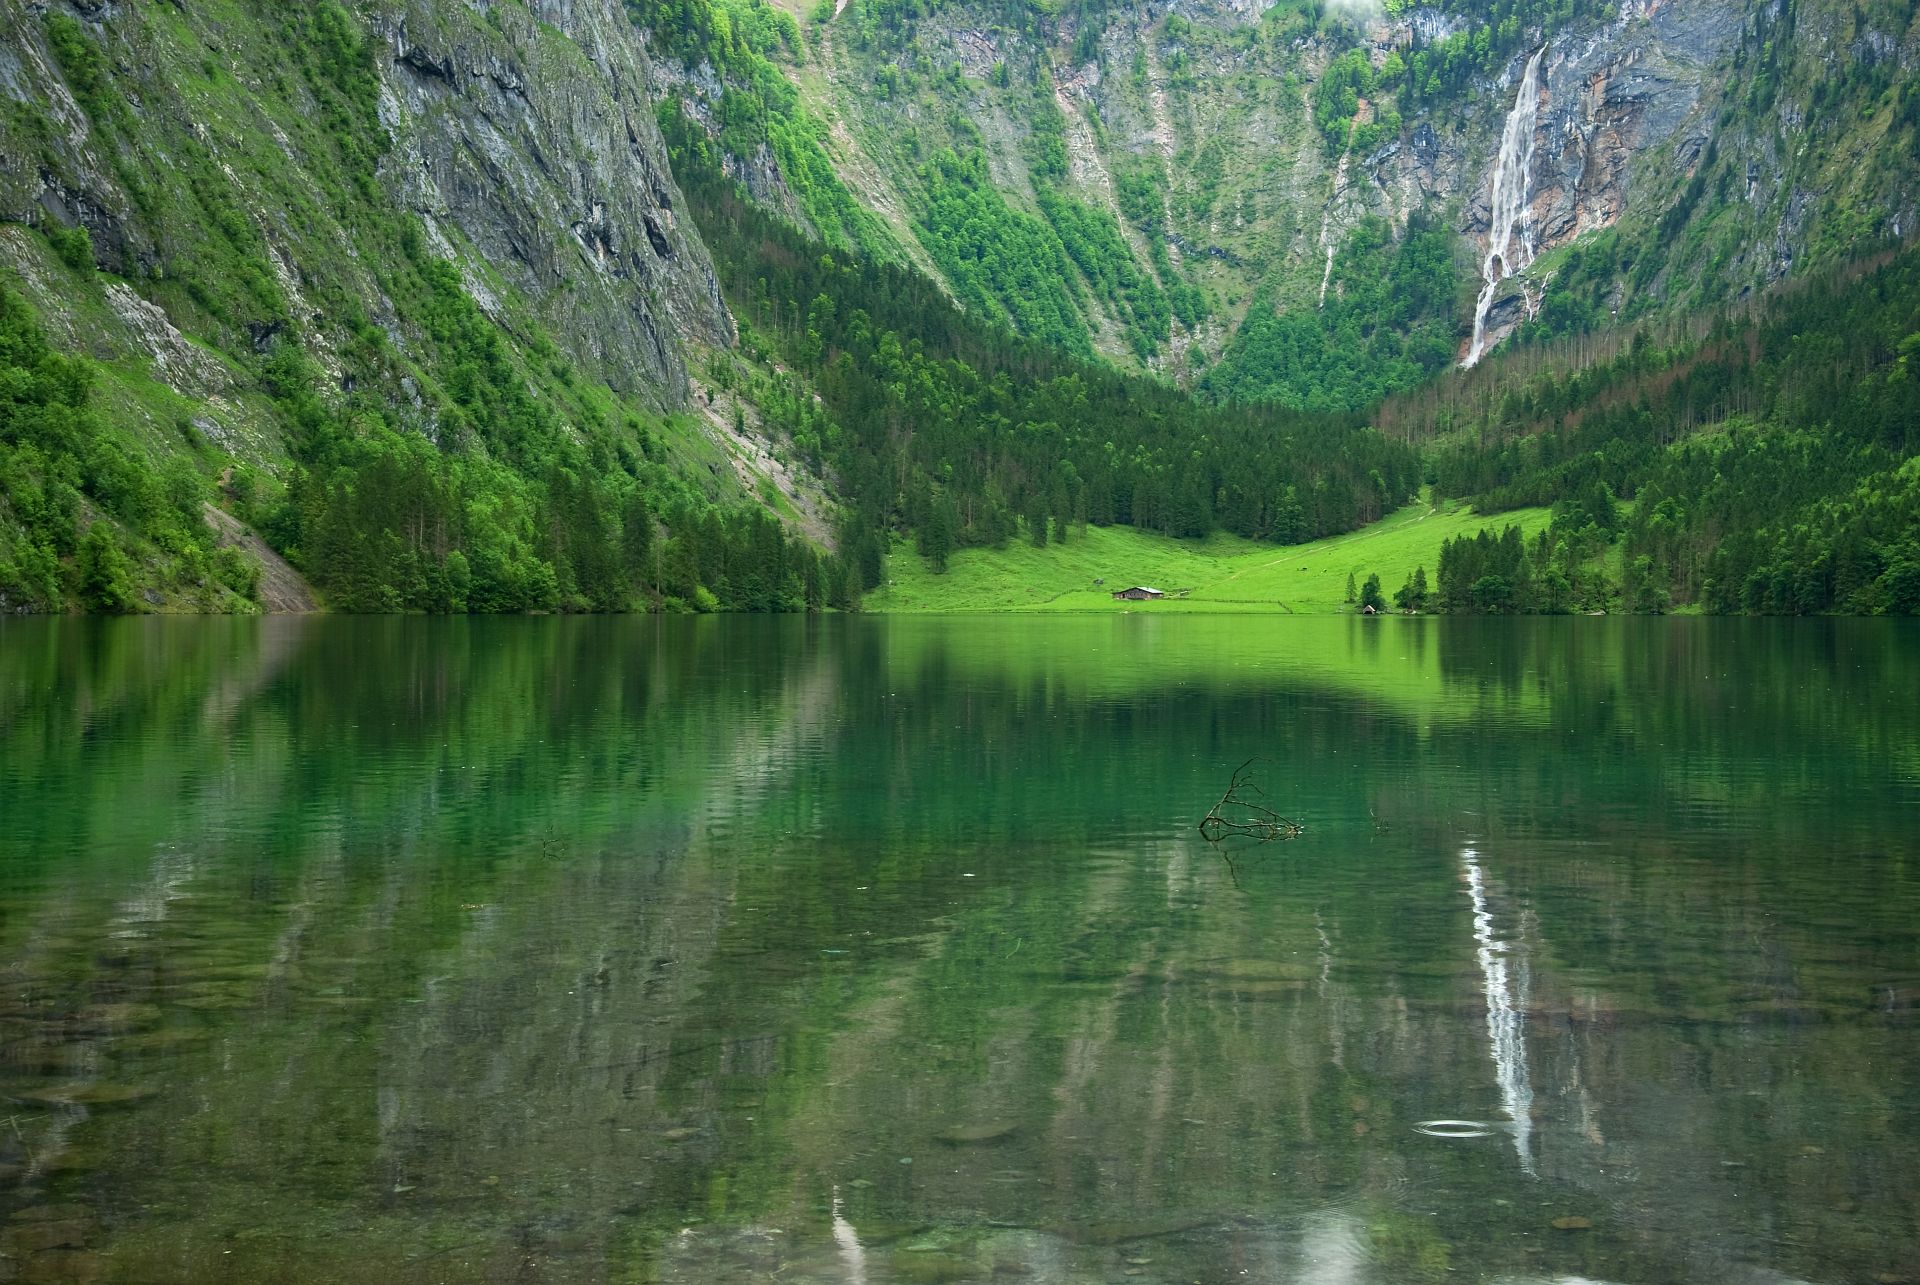 Obersee lake